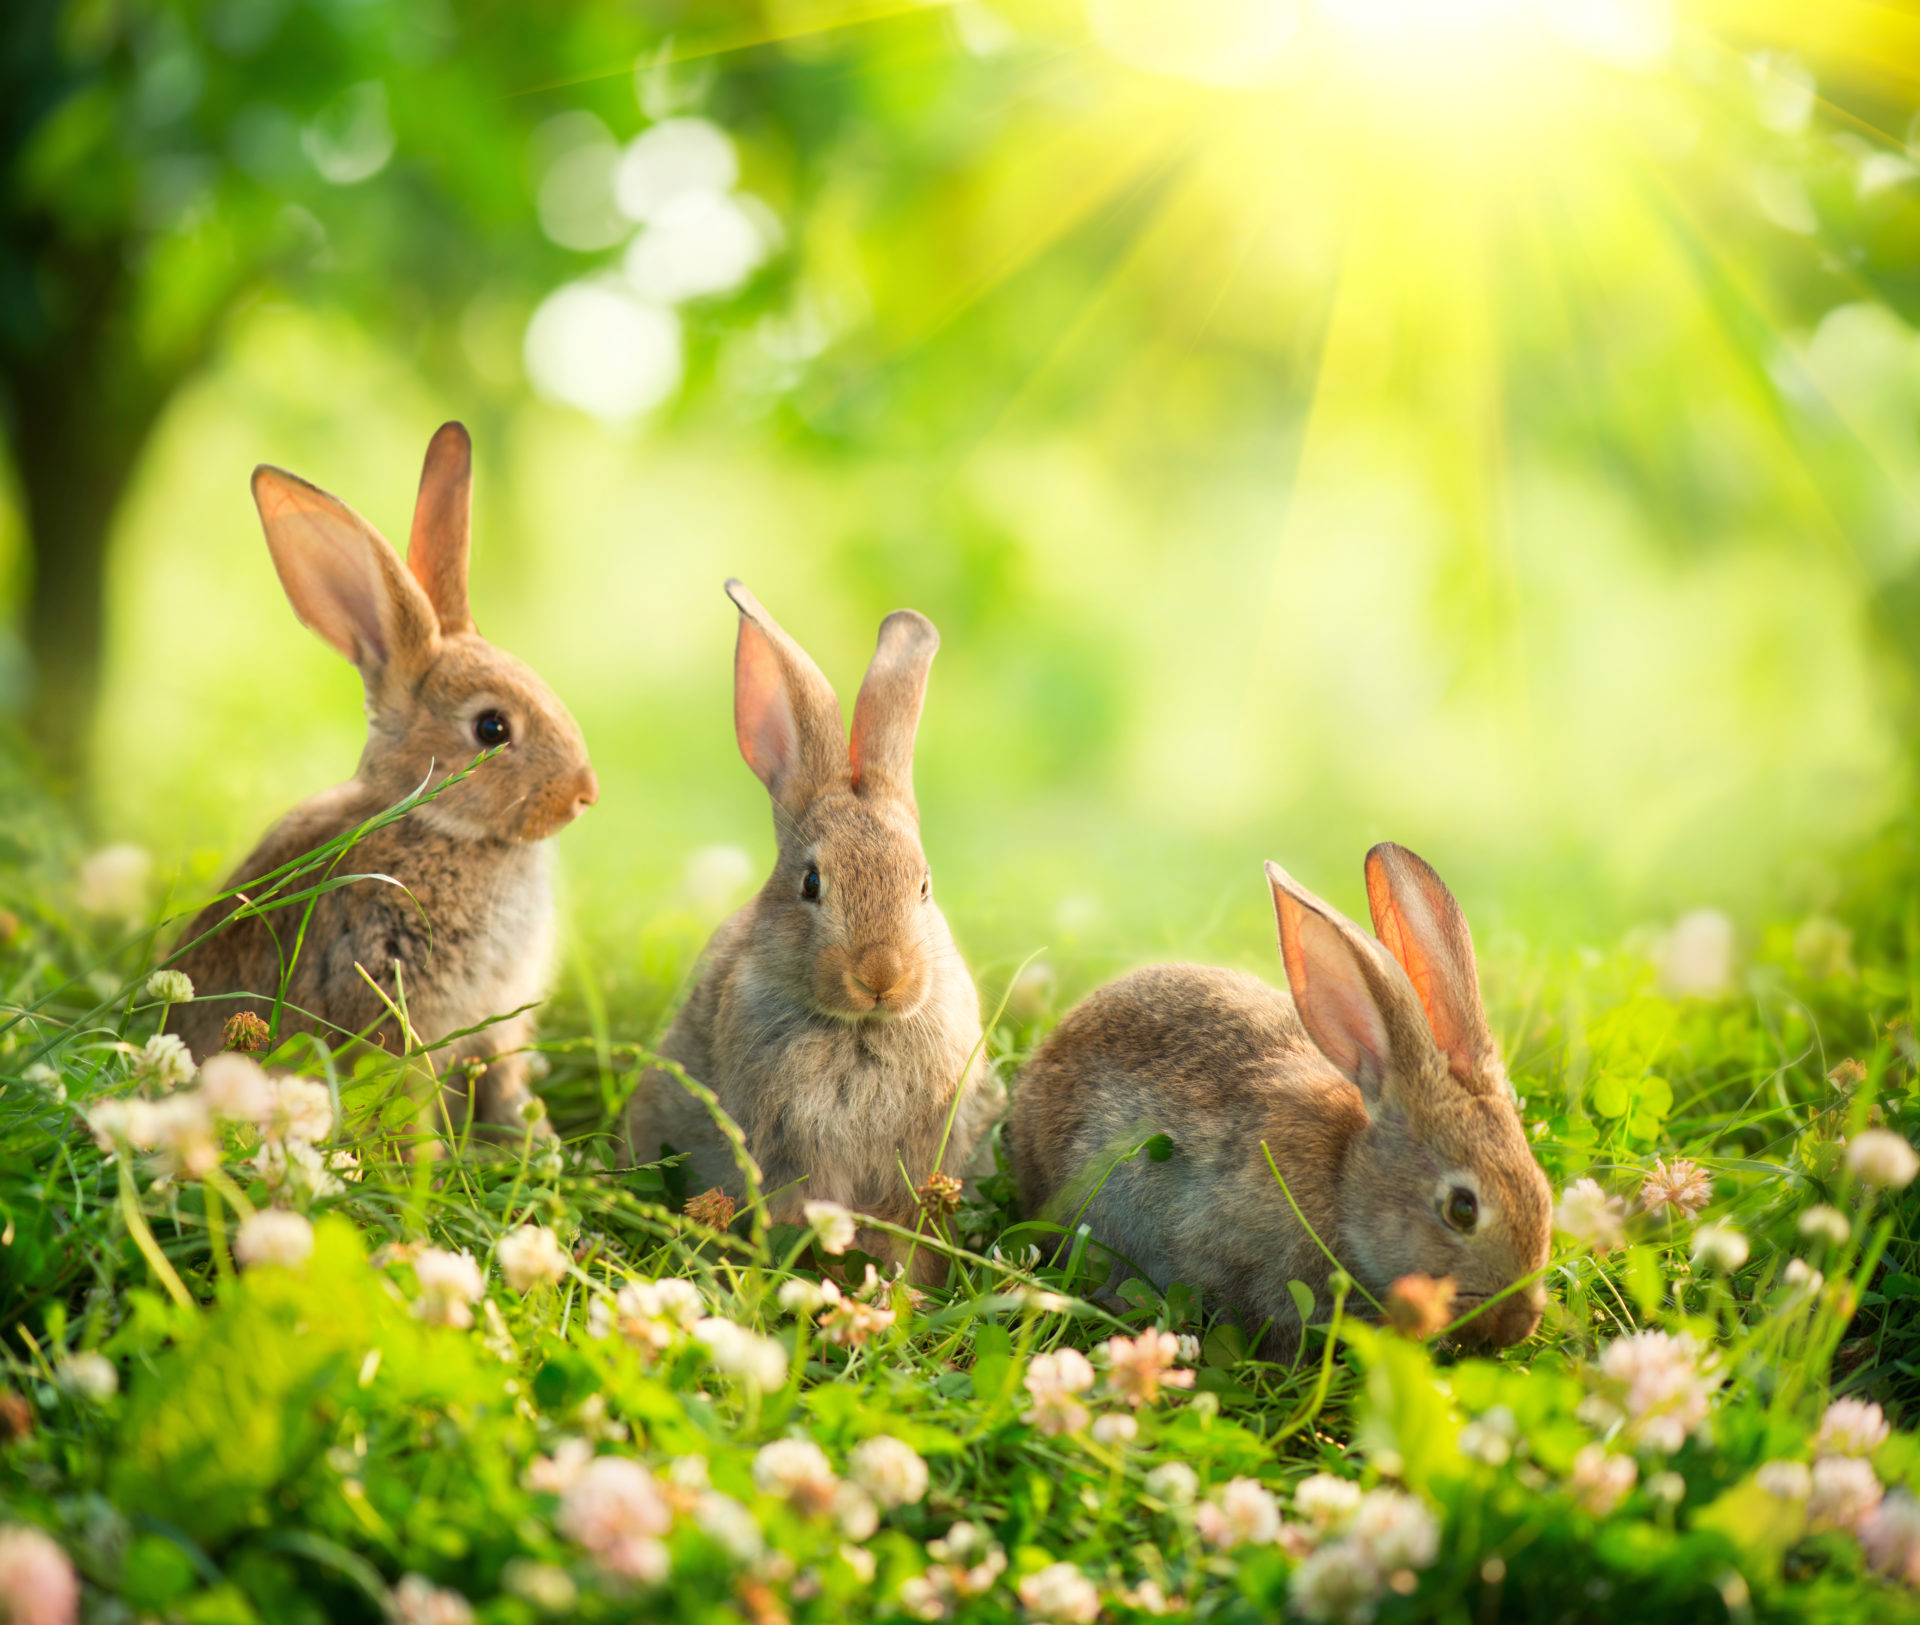 77175 Bunny Wallpaper Images Stock Photos  Vectors  Shutterstock